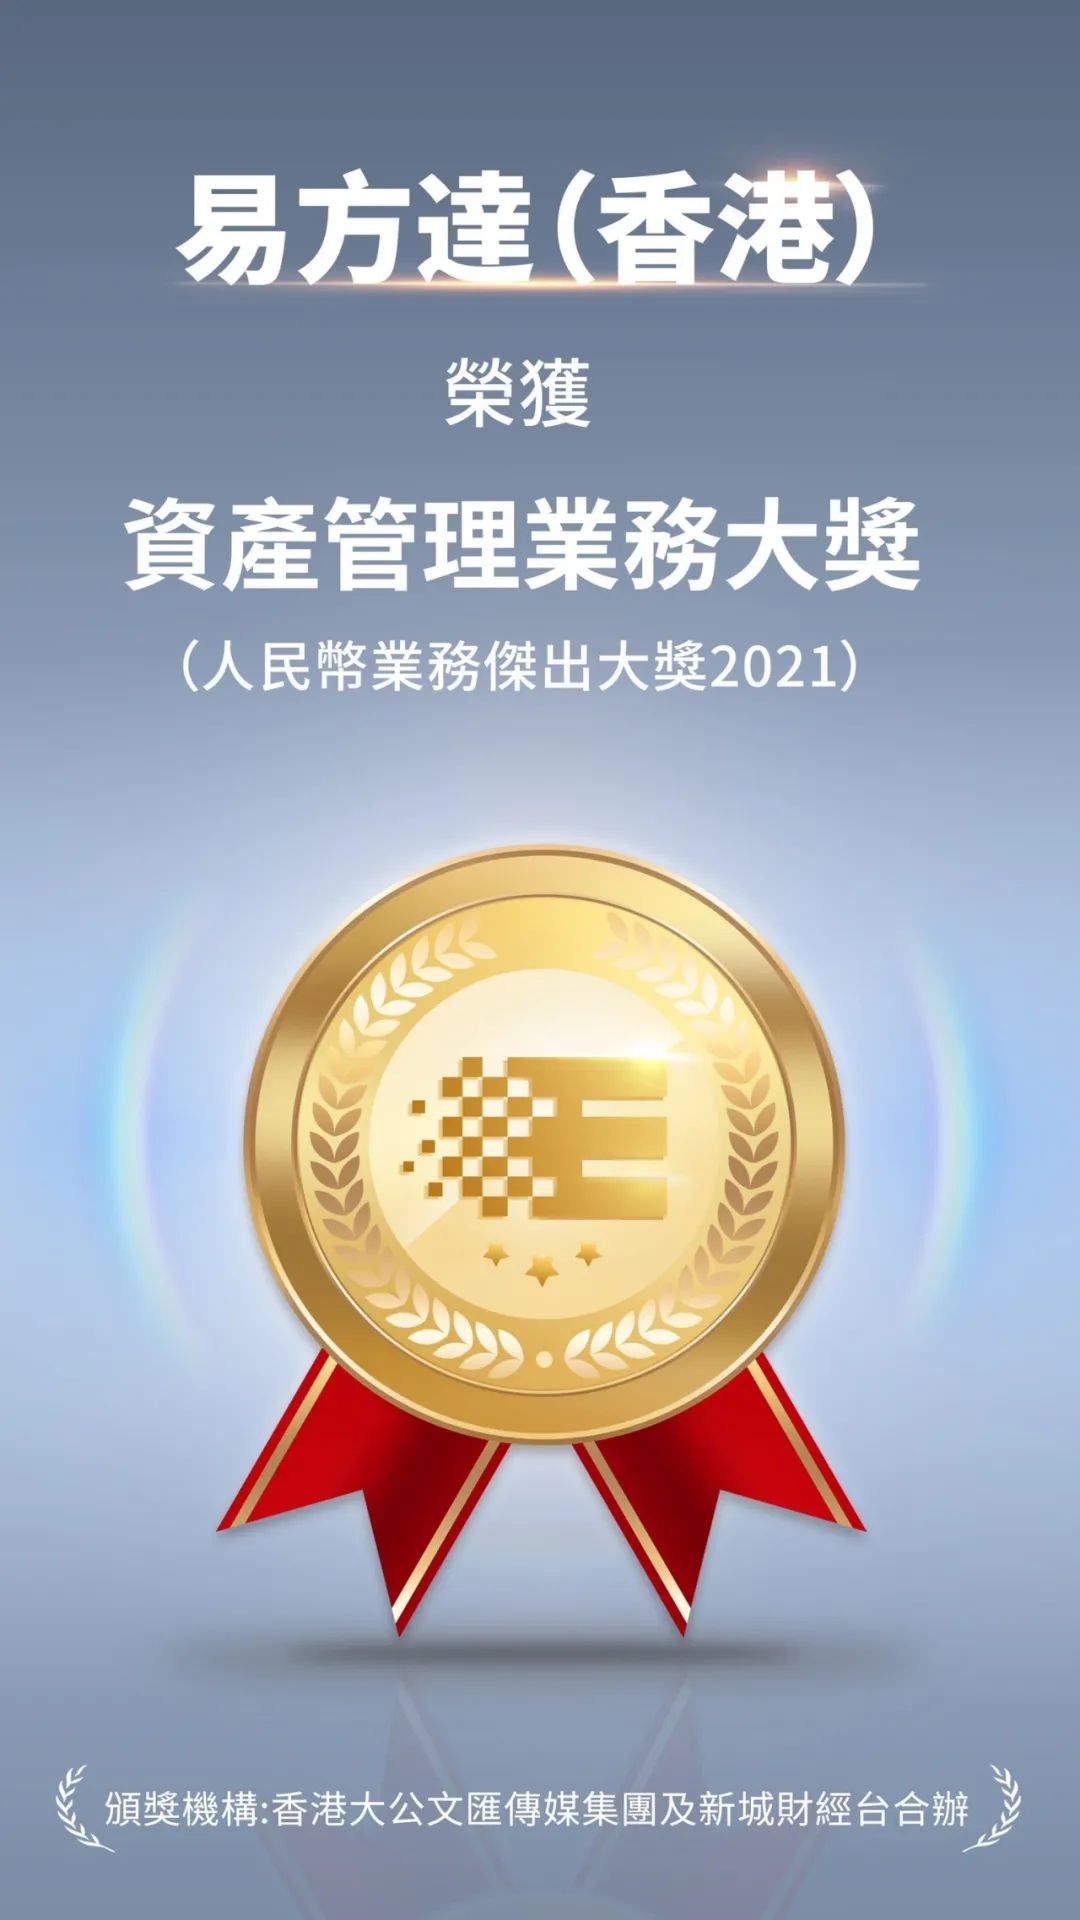 “易方达香港获“人民币业务杰出大奖2021” 连续十年获奖